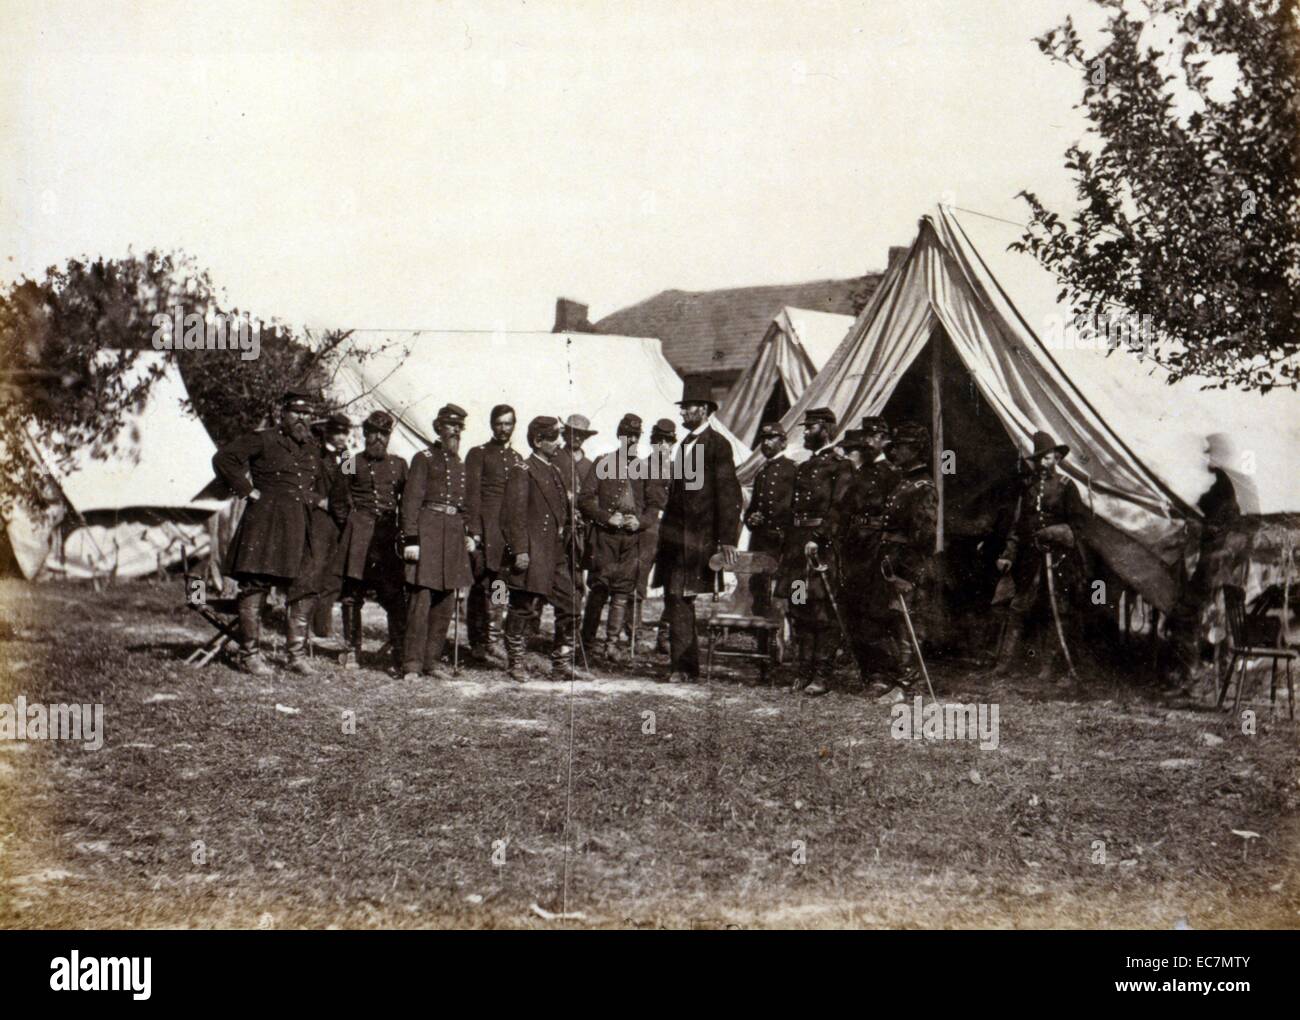 Präsident Lincoln auf Schlacht von Antietam, Oktober, 1862 bei seinem Besuch in General McClellan, Oberbefehlshaber der Armee des Potomac, zu ermutigen, "Little Mac' Angriff der Konföderierten Armee. Lincoln wird gestellt, um einen Stuhl und nach McClellan mit anderen Union Offiziere der Armee außerhalb der Hütte gruppiert. Stockfoto